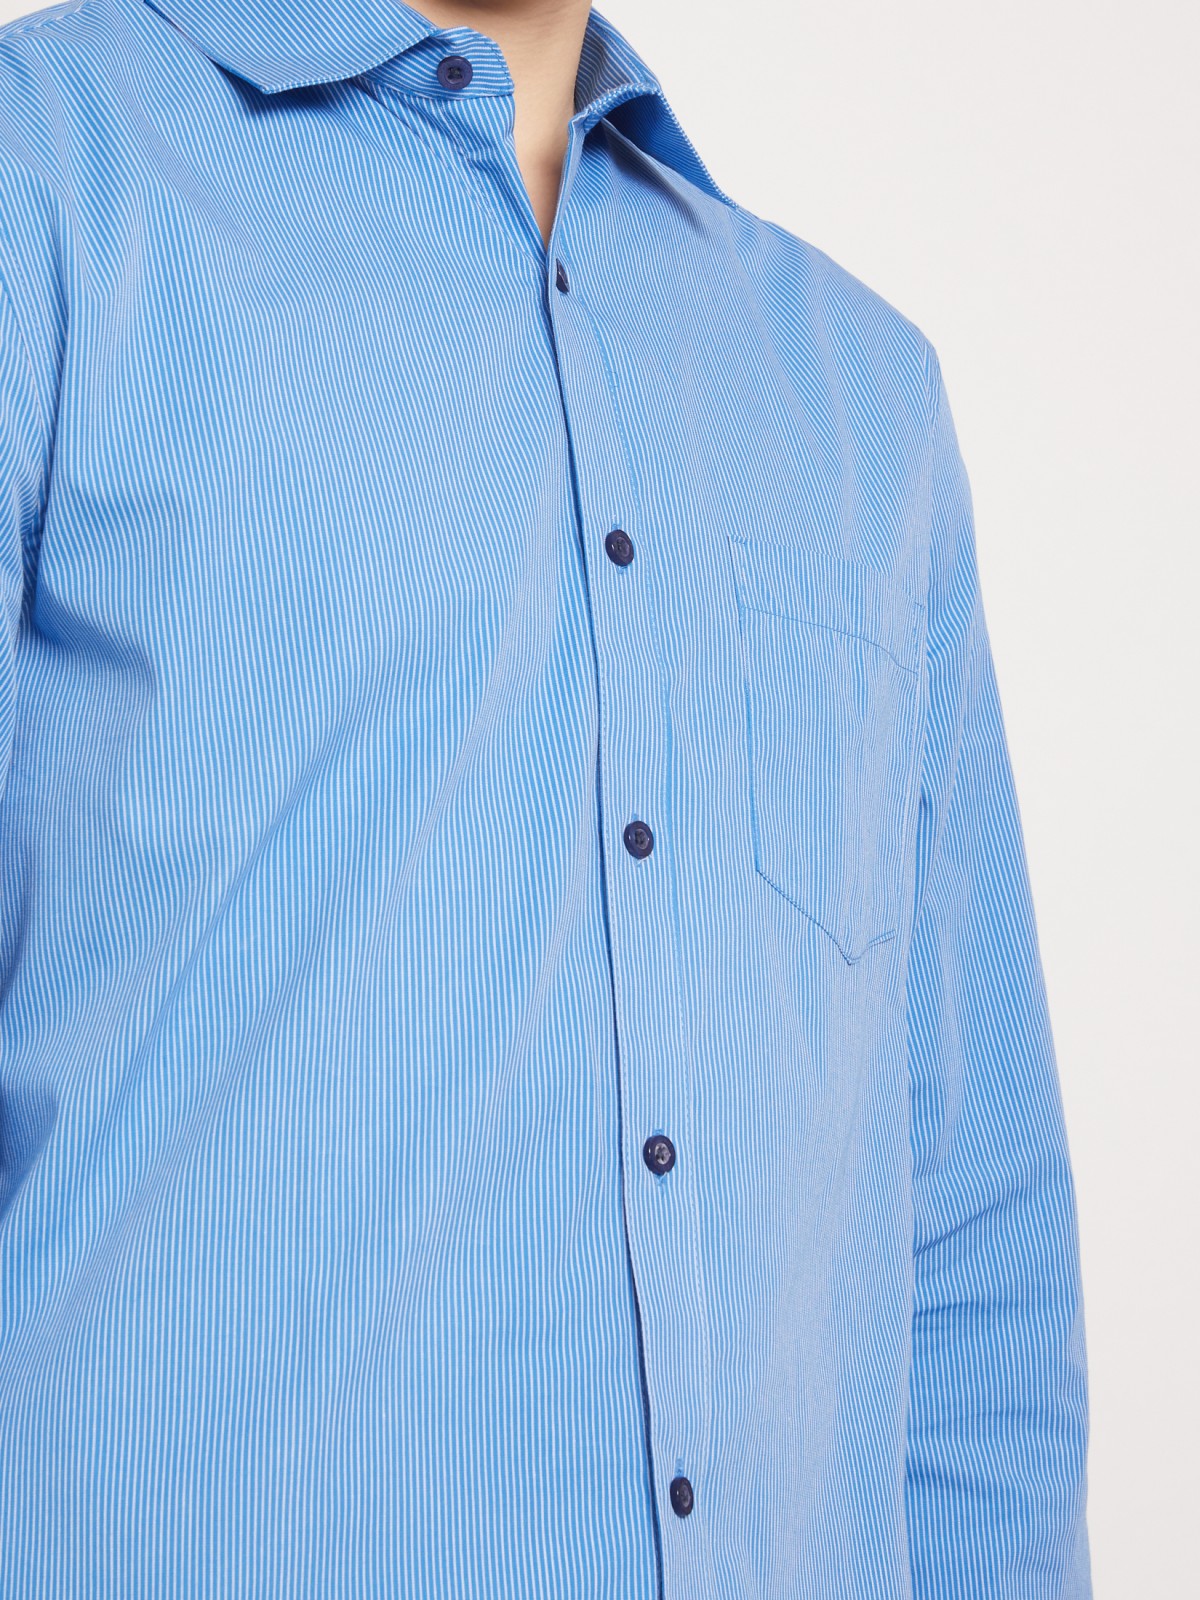 Рубашка с узором в тонкую полоску zolla 011332162012, цвет голубой, размер S - фото 5